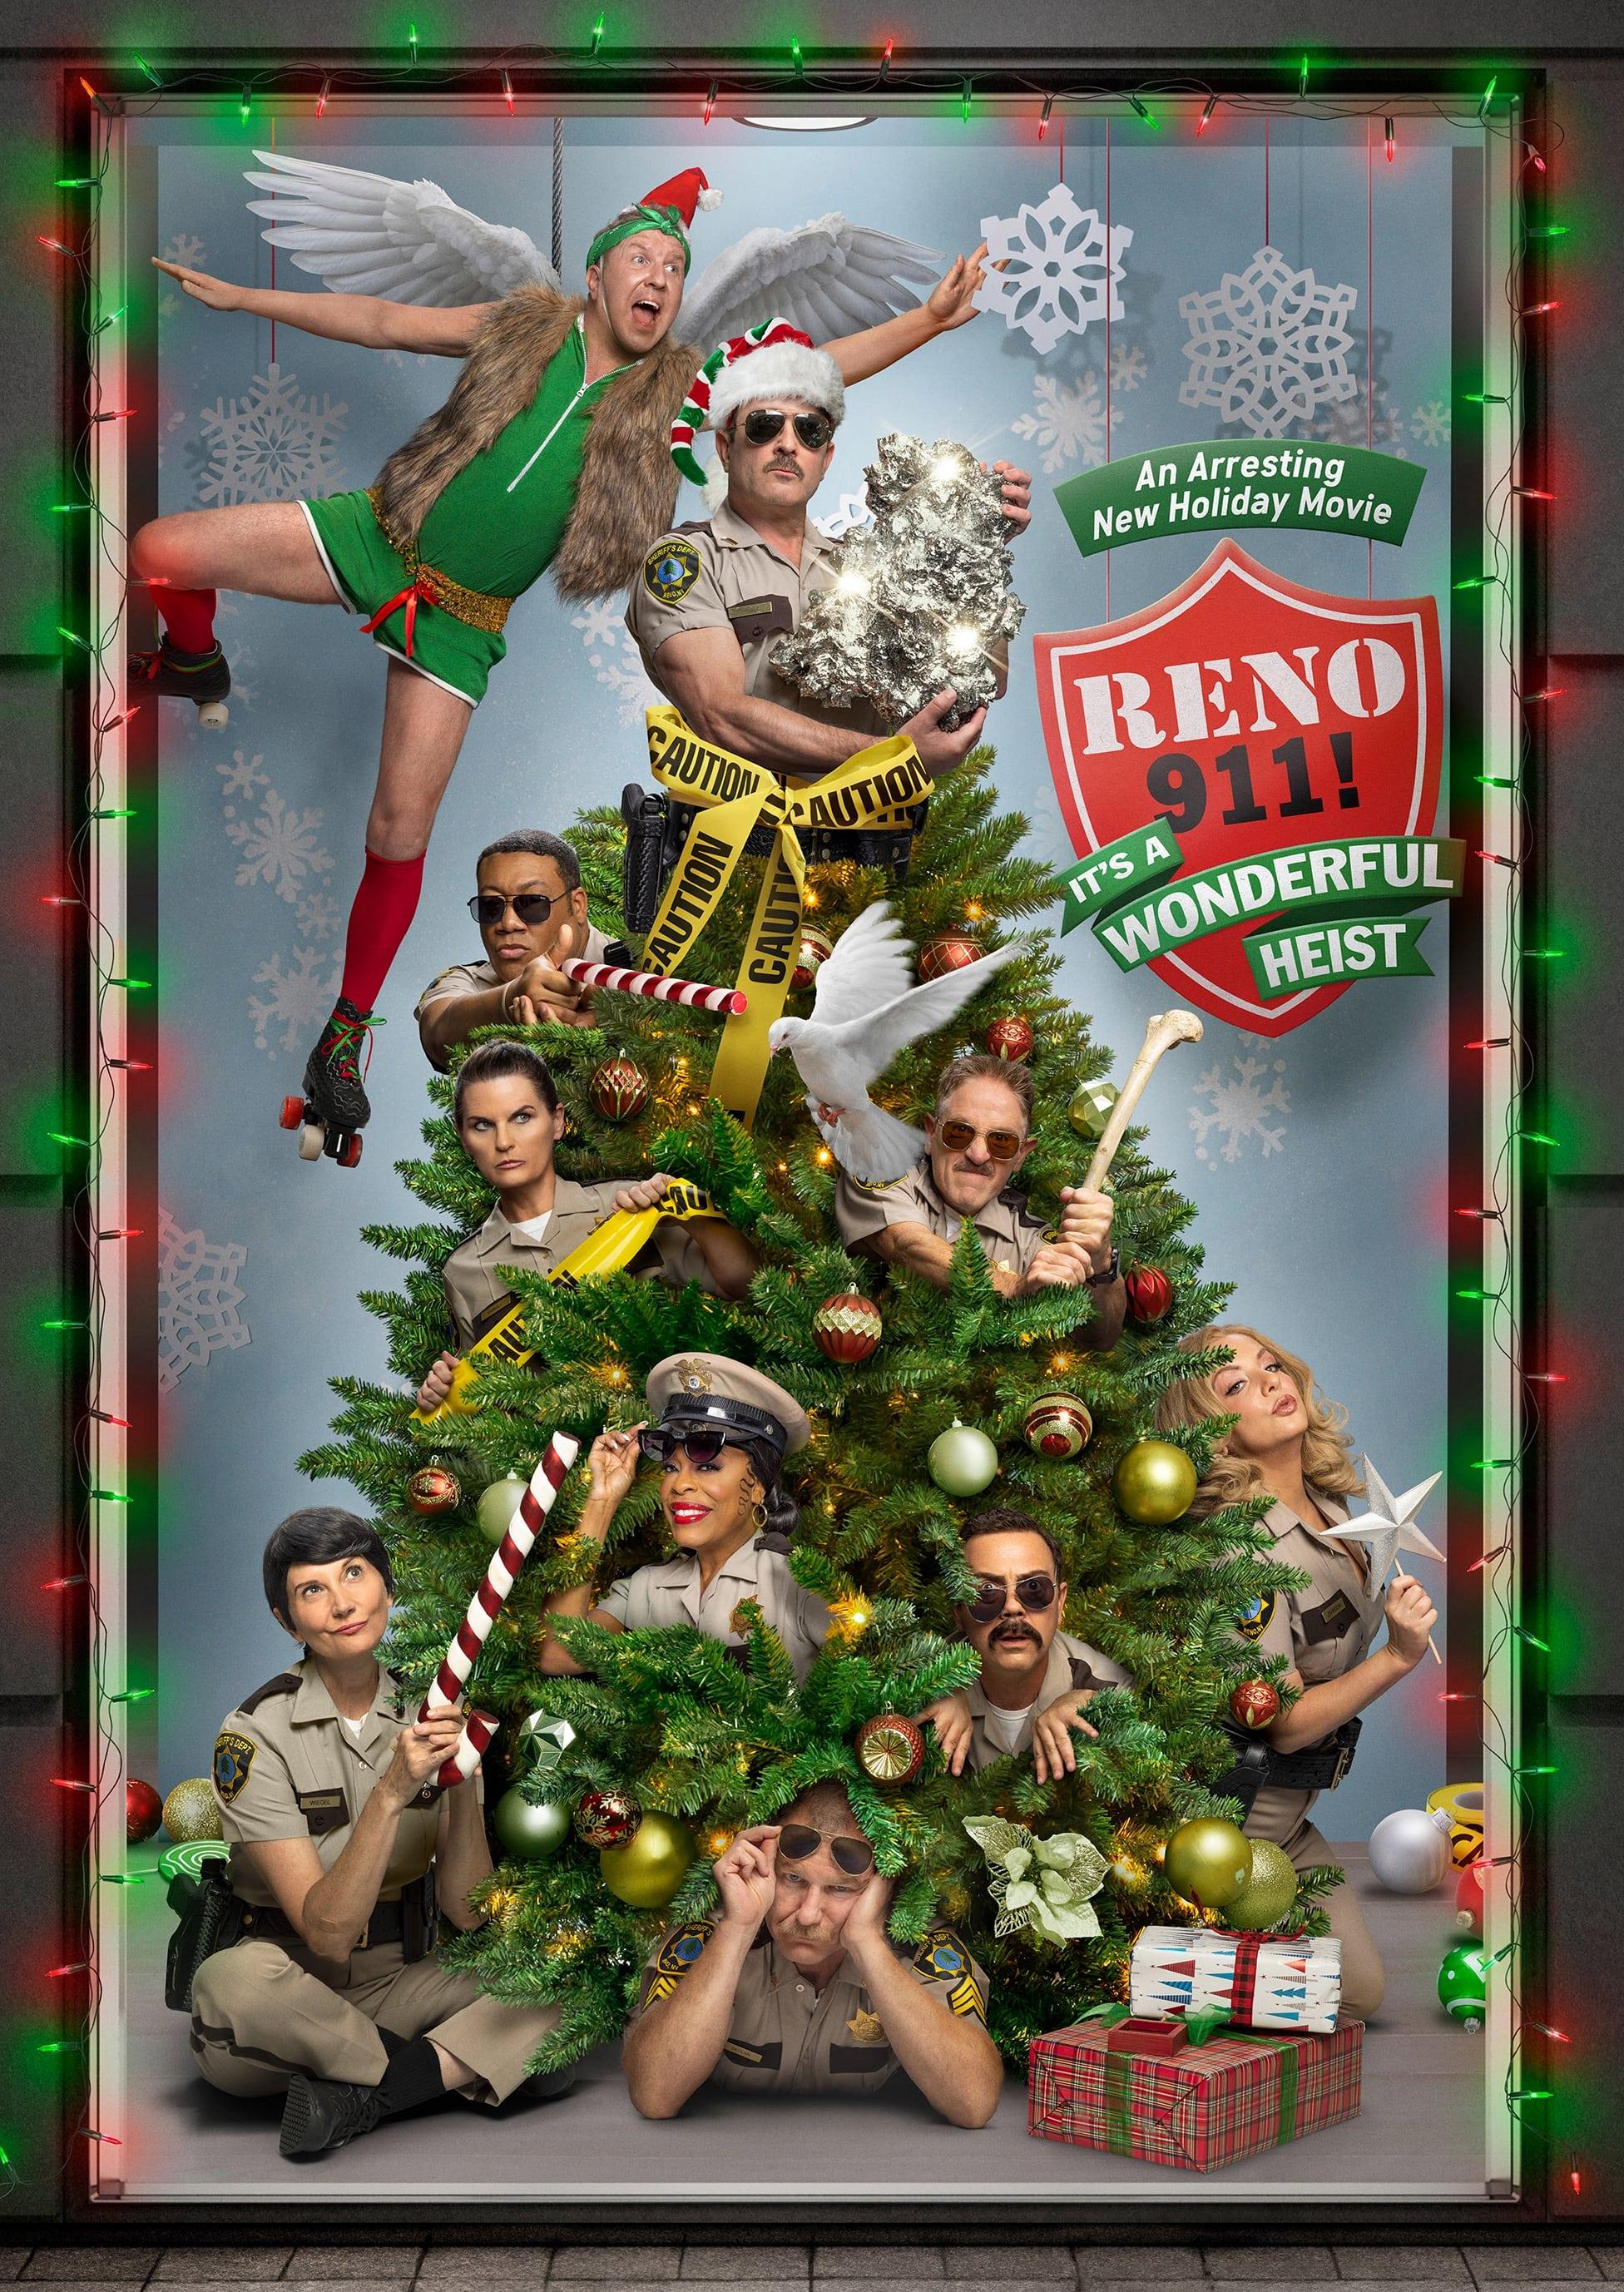 Reno 911!: It's a Wonderful Heist poster